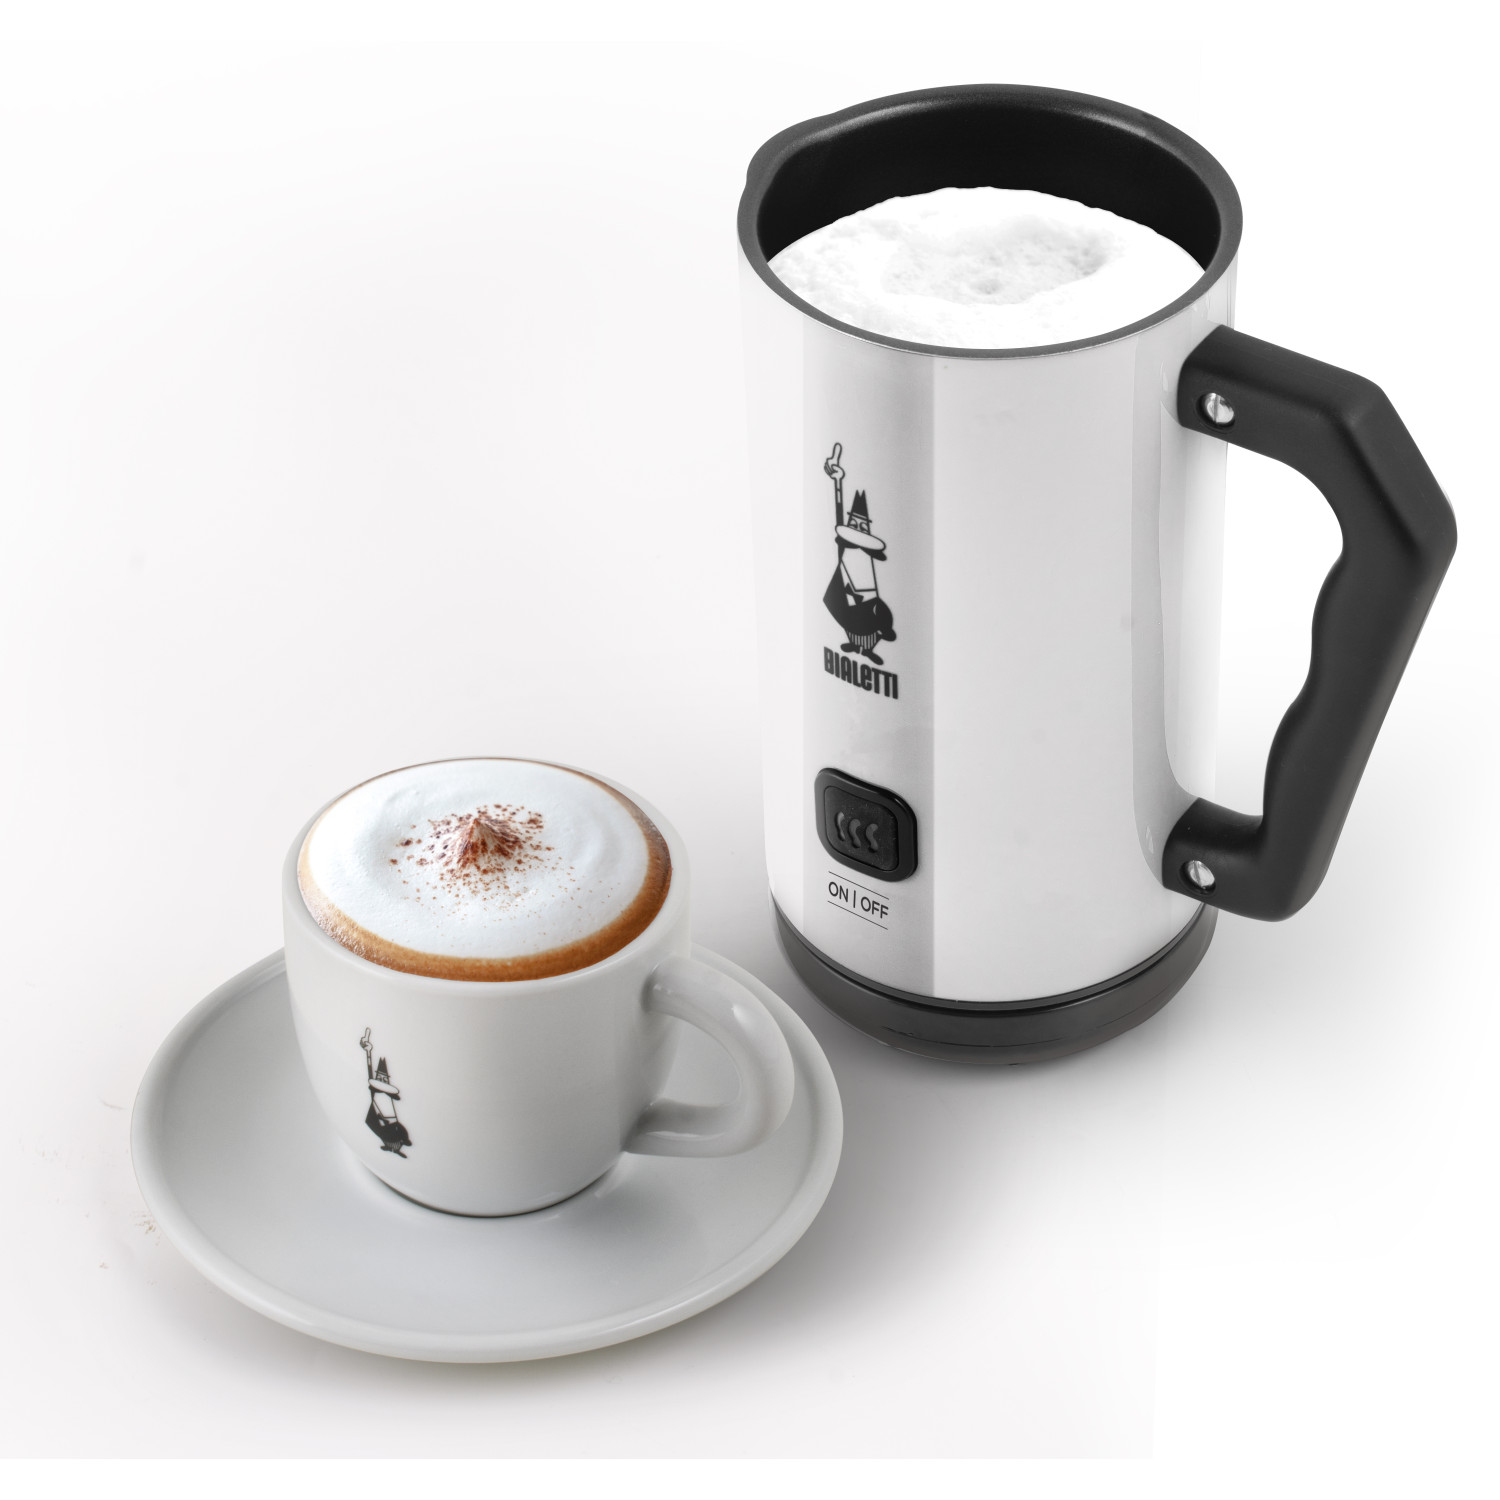 Espressokocher Weiß/Schwarz MK02 Milk BIALETTI Frother Elettric